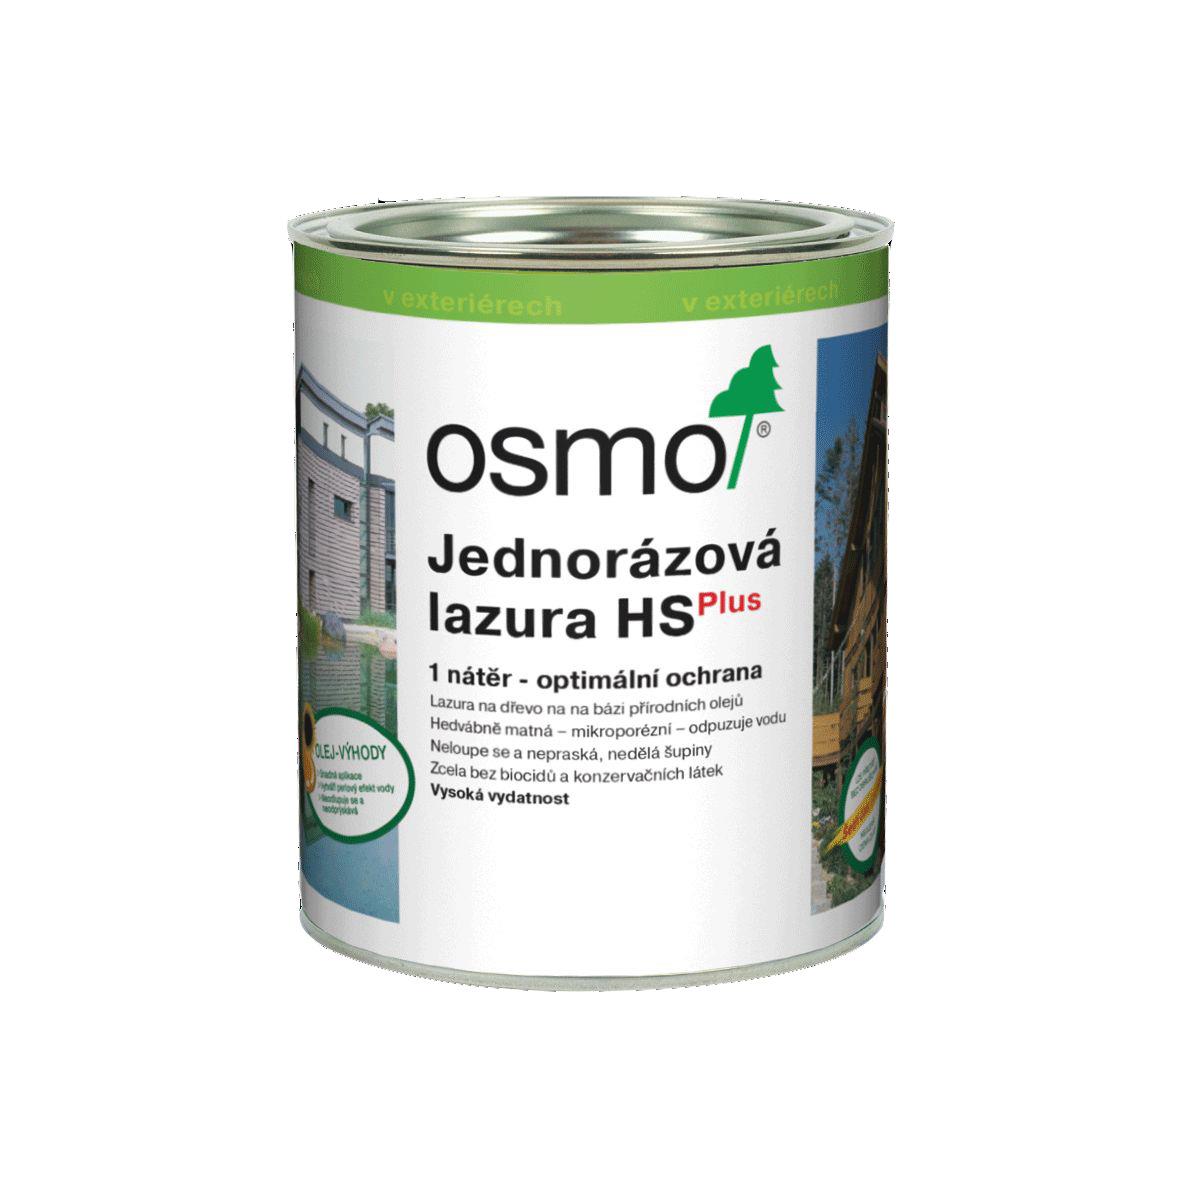 OSMO Jednorázová lazura HS 9211 smrk bílý 0,75l